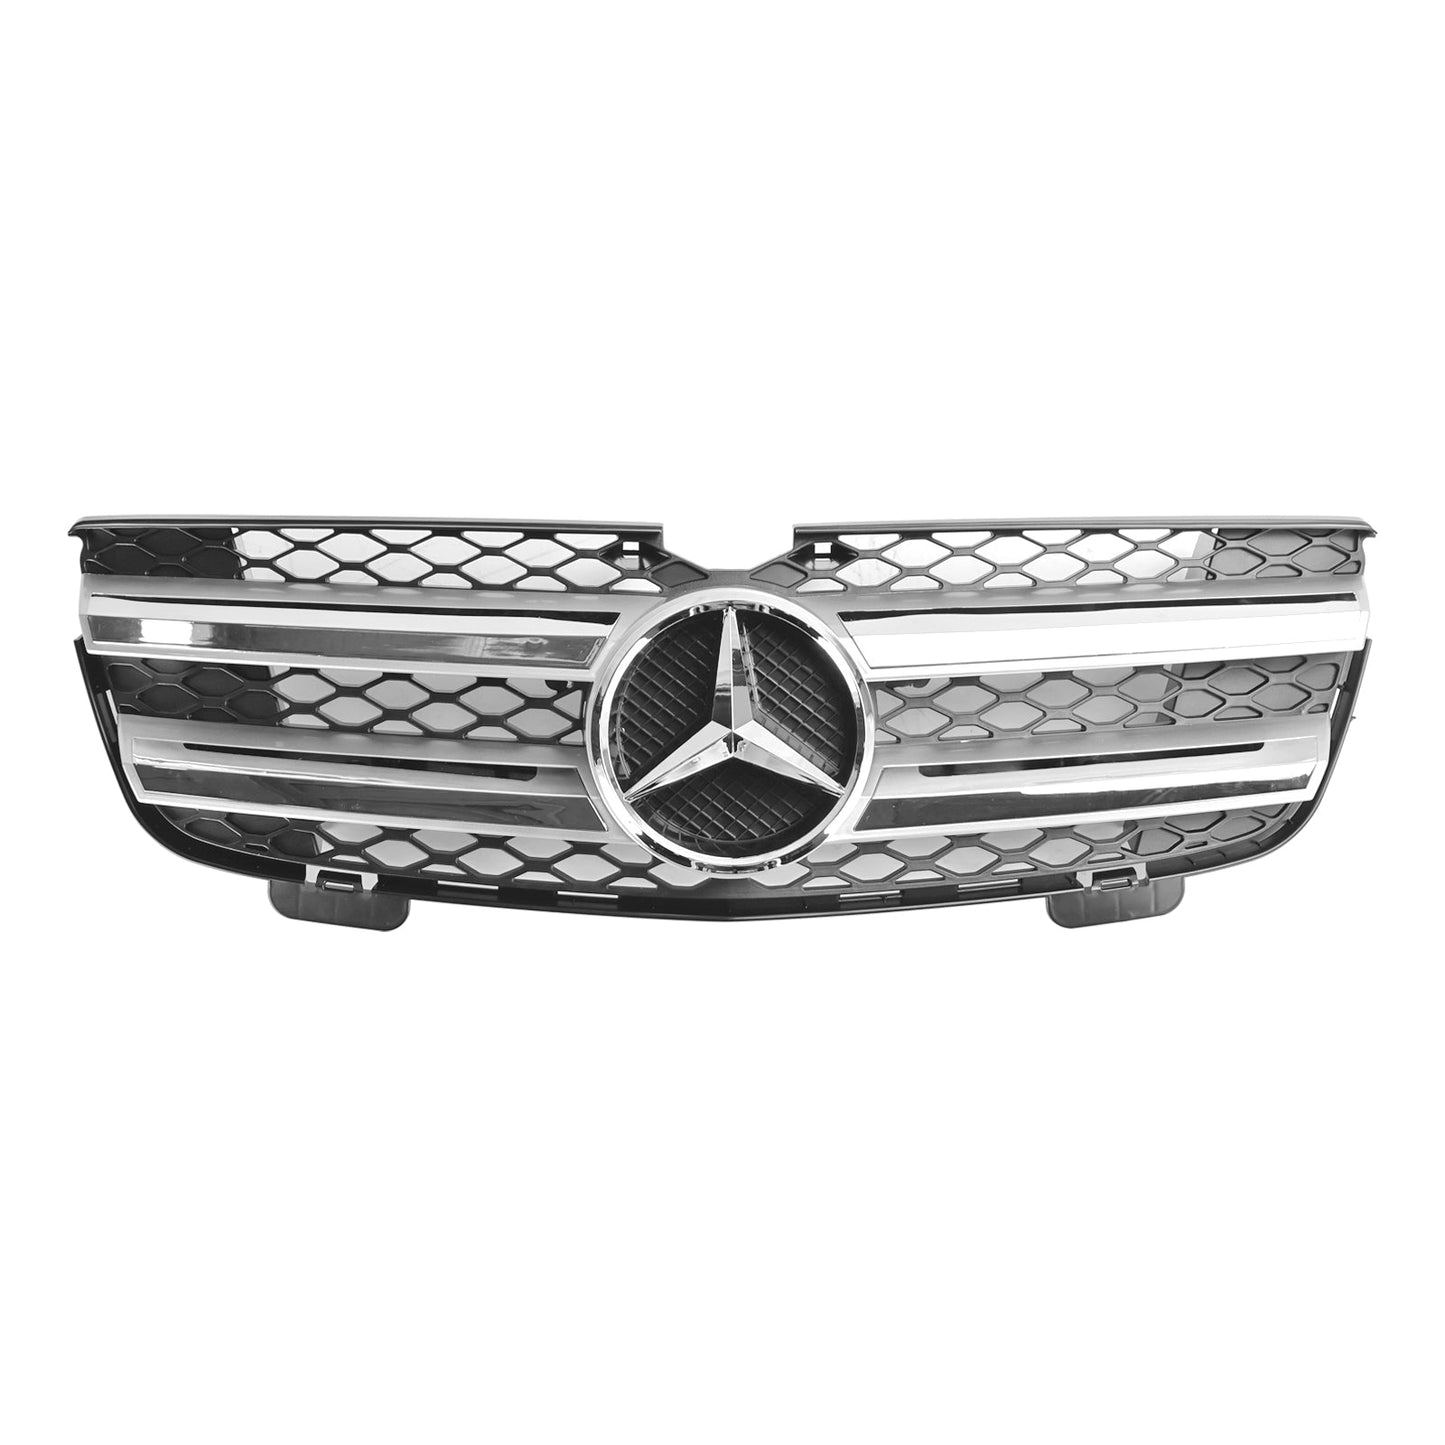 Frontgrill für die Stoßstange, passend für Mercedes Benz GL-Klasse X164 2007–2009, Chrom